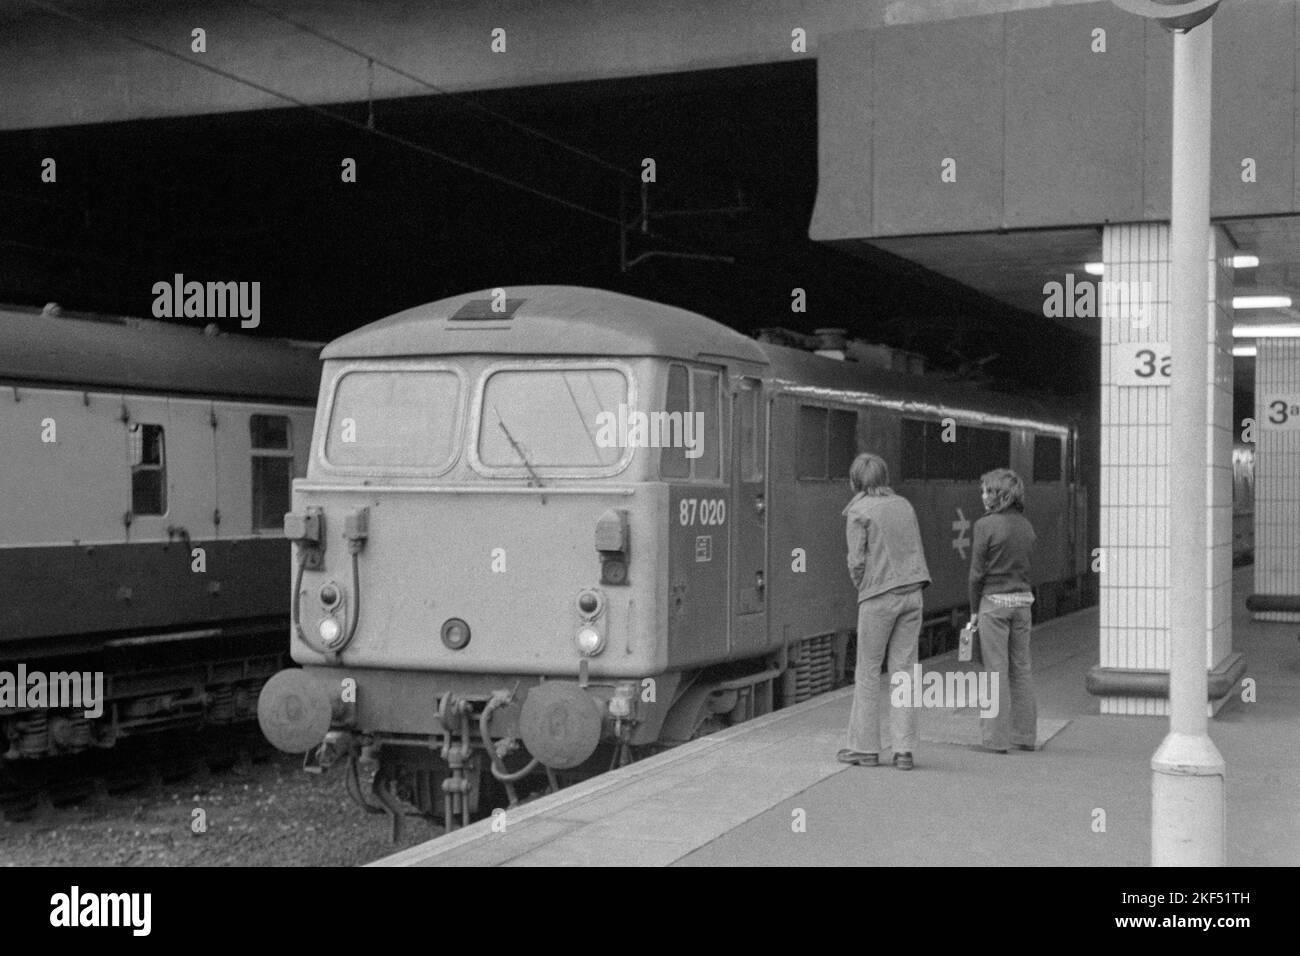 Die ursprüngliche britische Eisenbahn-E-Lokomotive der Baureihe 87 Nummer 87020 im Personenverkehr wurde Ende 1970s Anfang 1980s von zwei jungen Bahnbeobachtern in birmingham untersucht Stockfoto